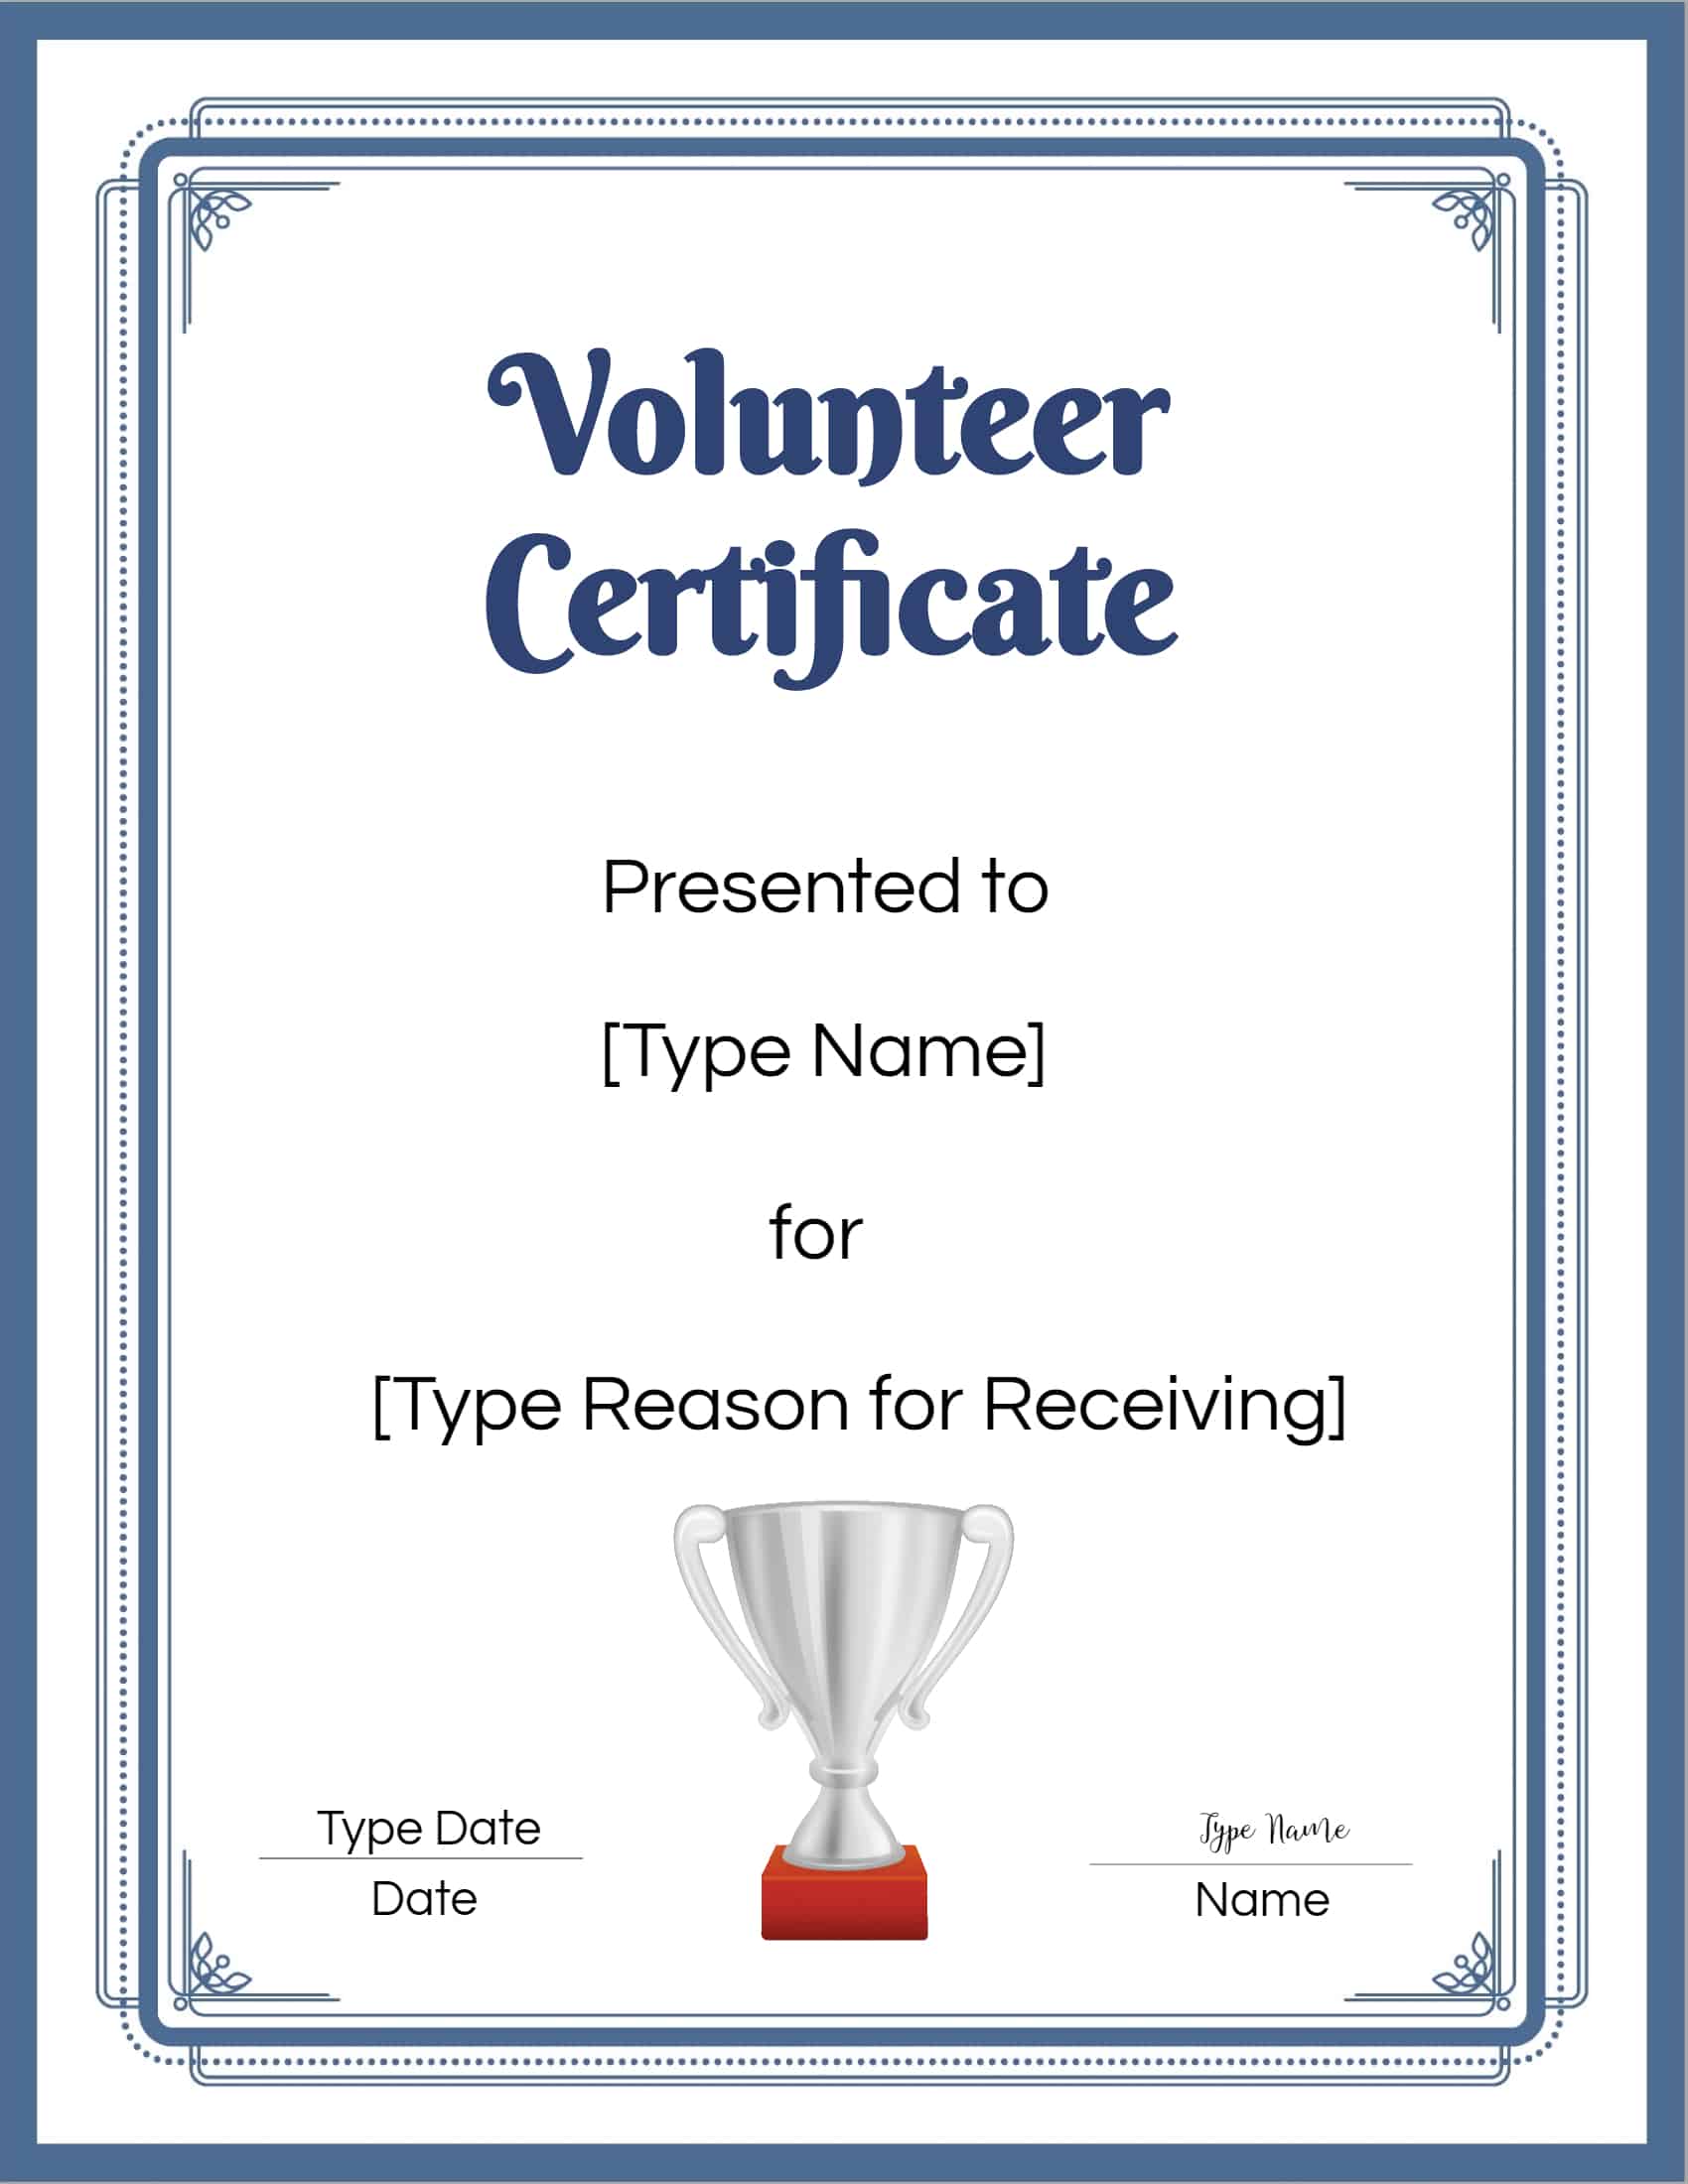 Volunteer Certificate 16 